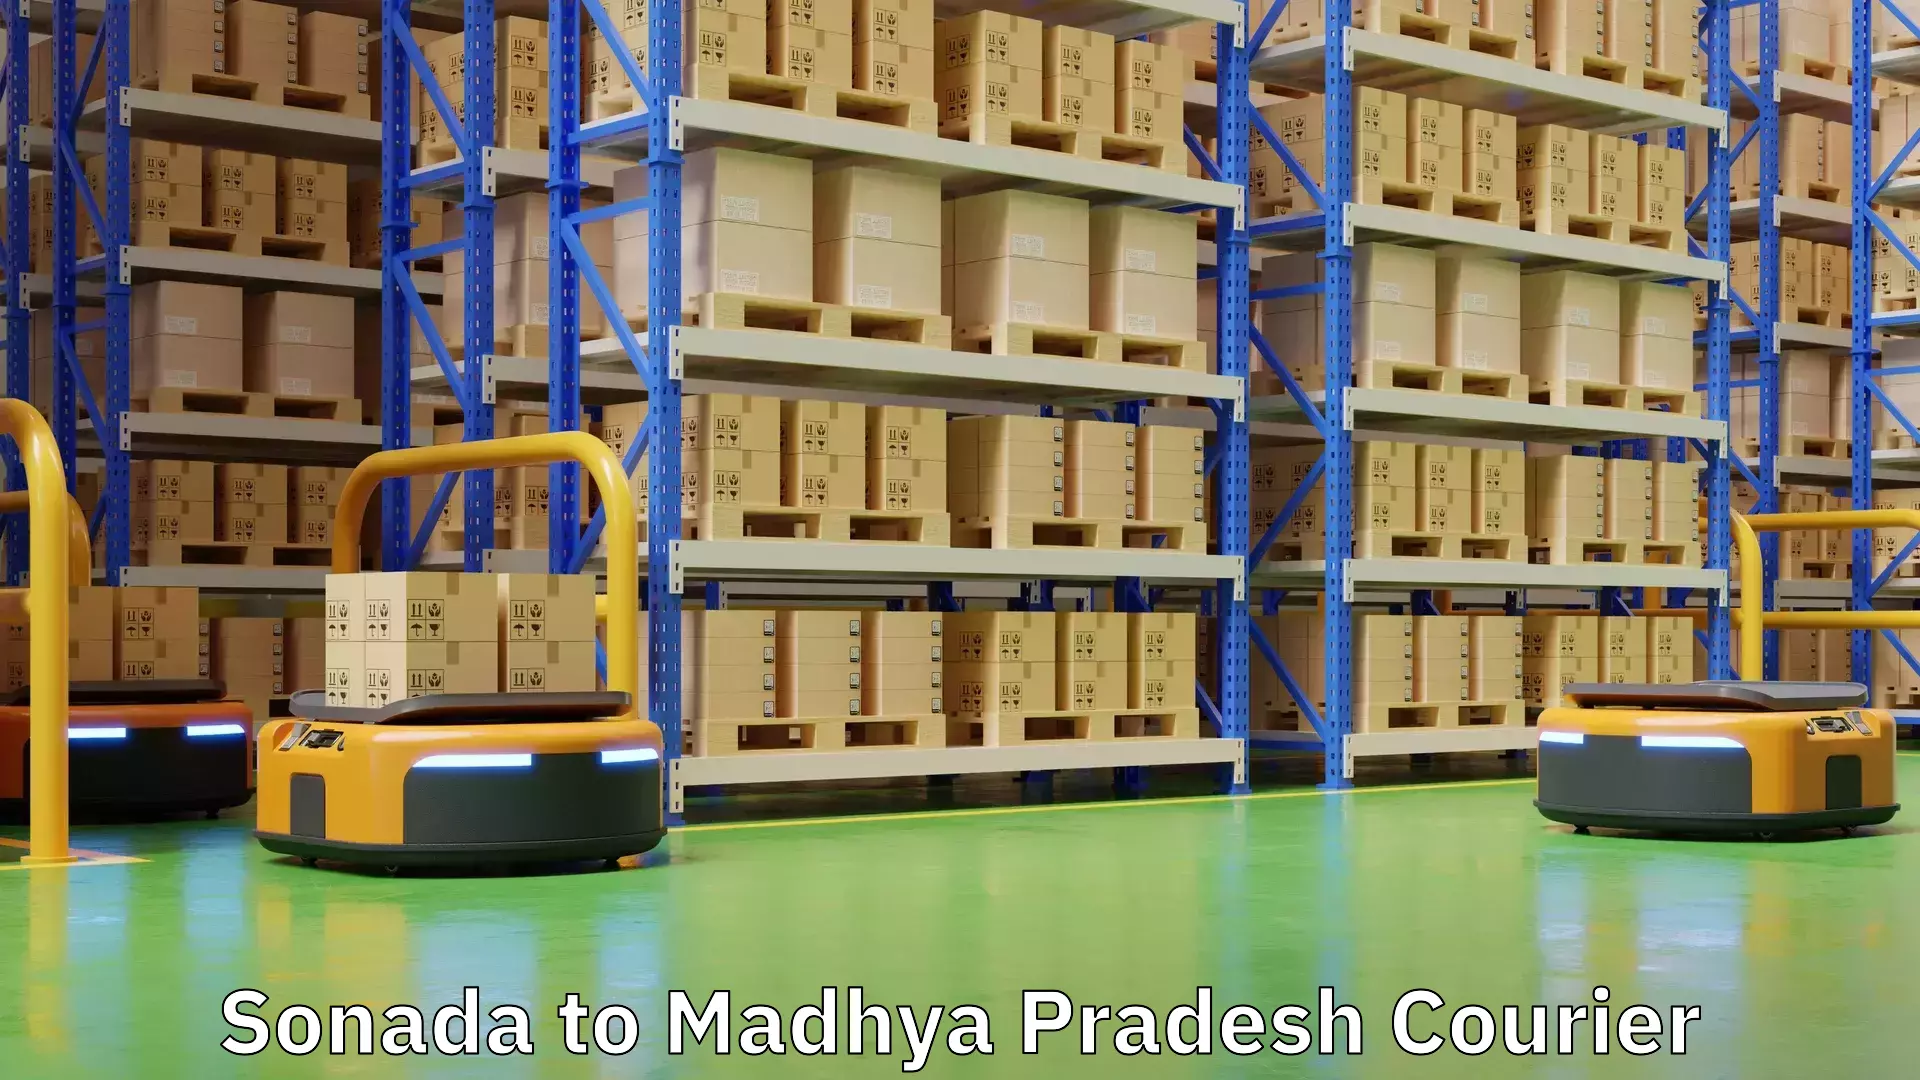 Fast shipping solutions in Sonada to Madhya Pradesh